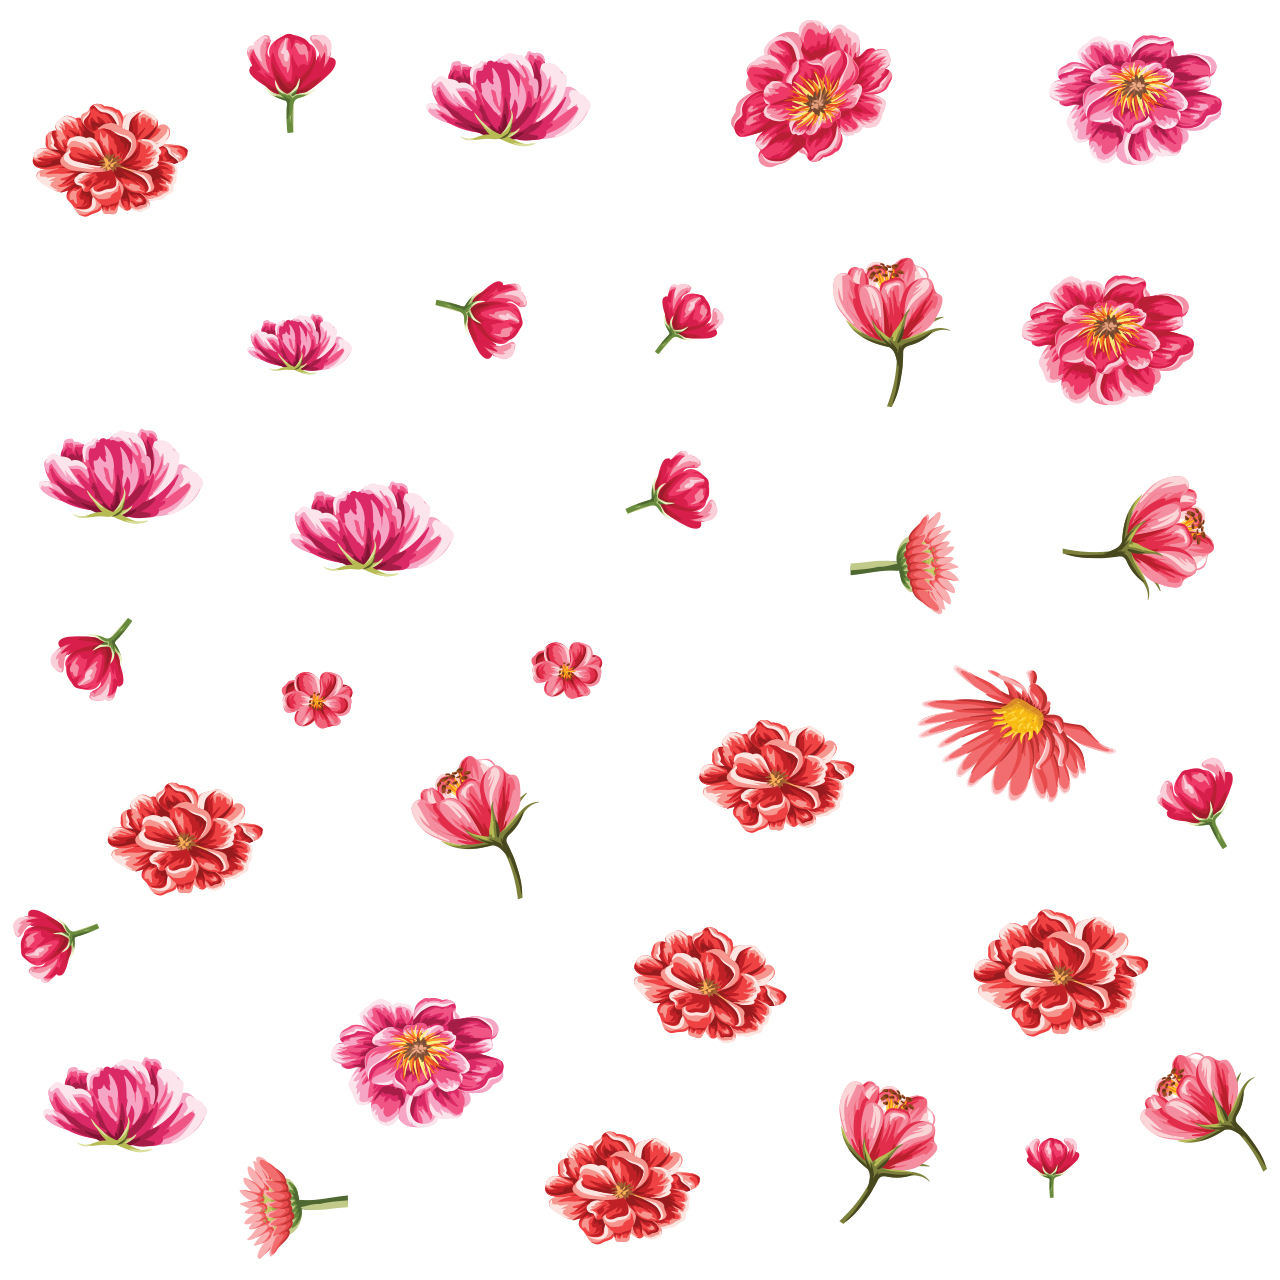 برچسب -استیکر- پوستر دیواری -صالسو آرت استیکر دیواری طرح flower pattaern4 hk گلهای بهاری صورتی